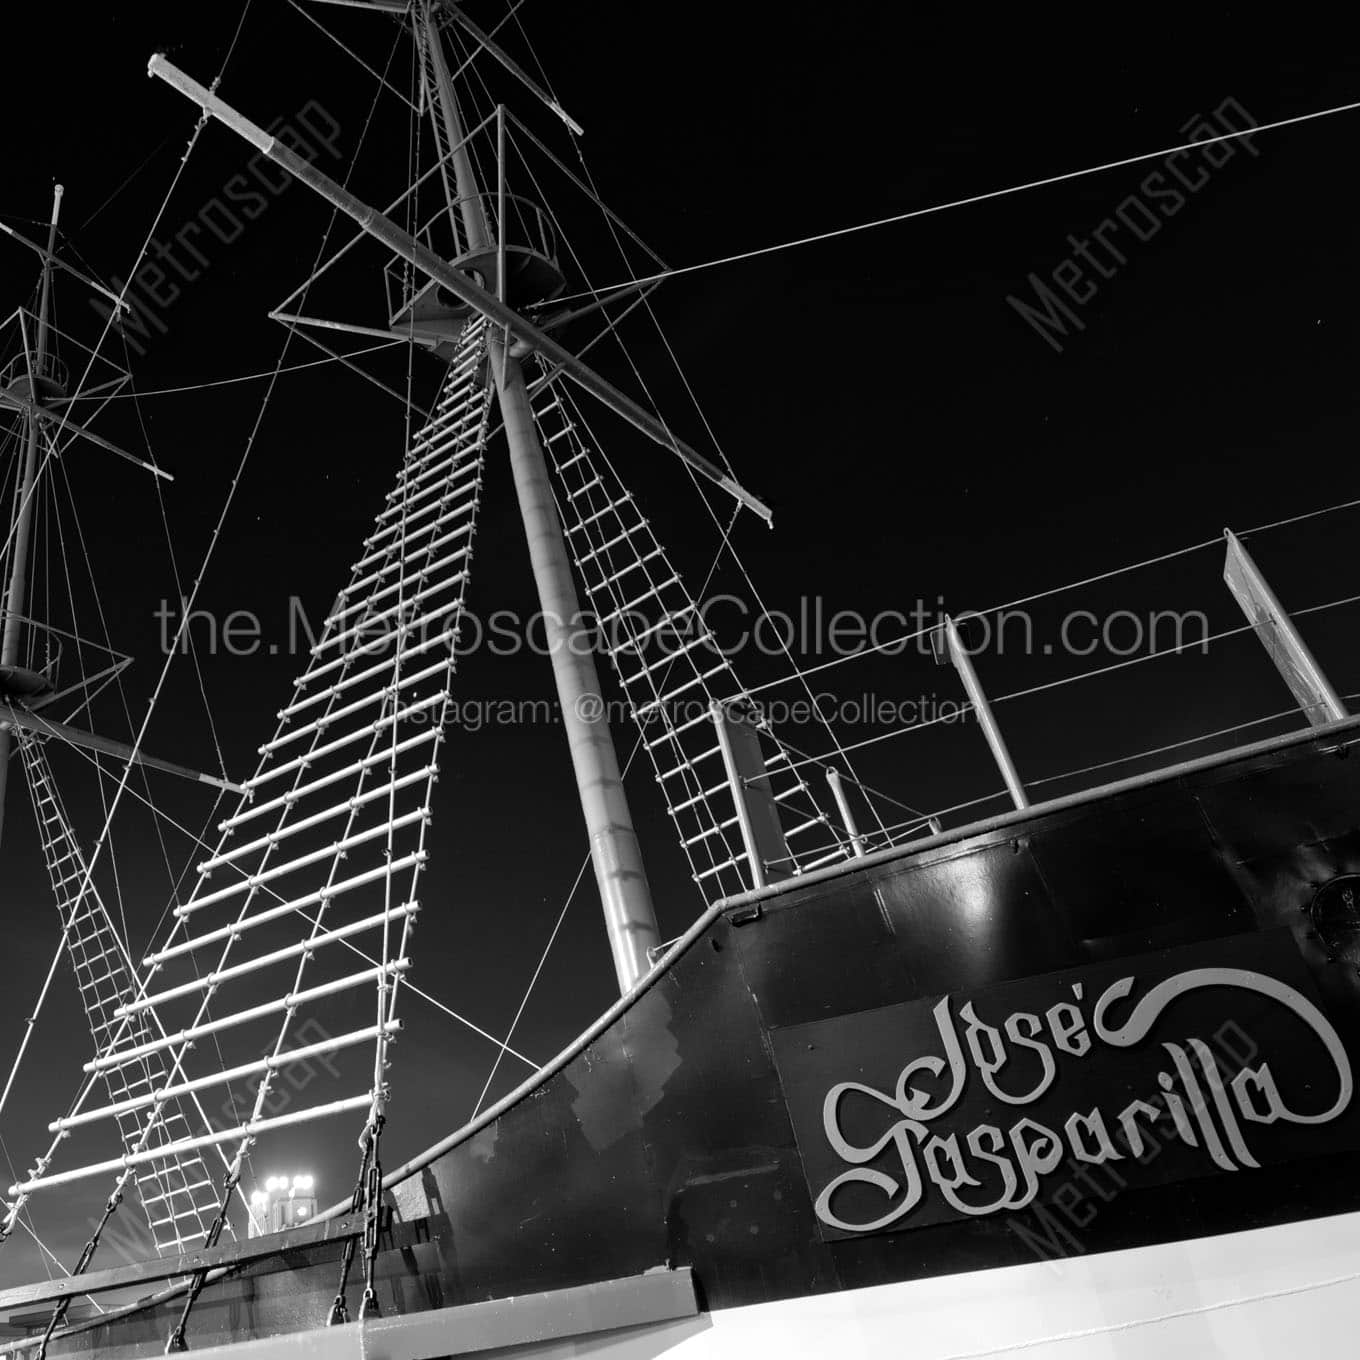 jose gasparilla pirate ship Black & White Wall Art